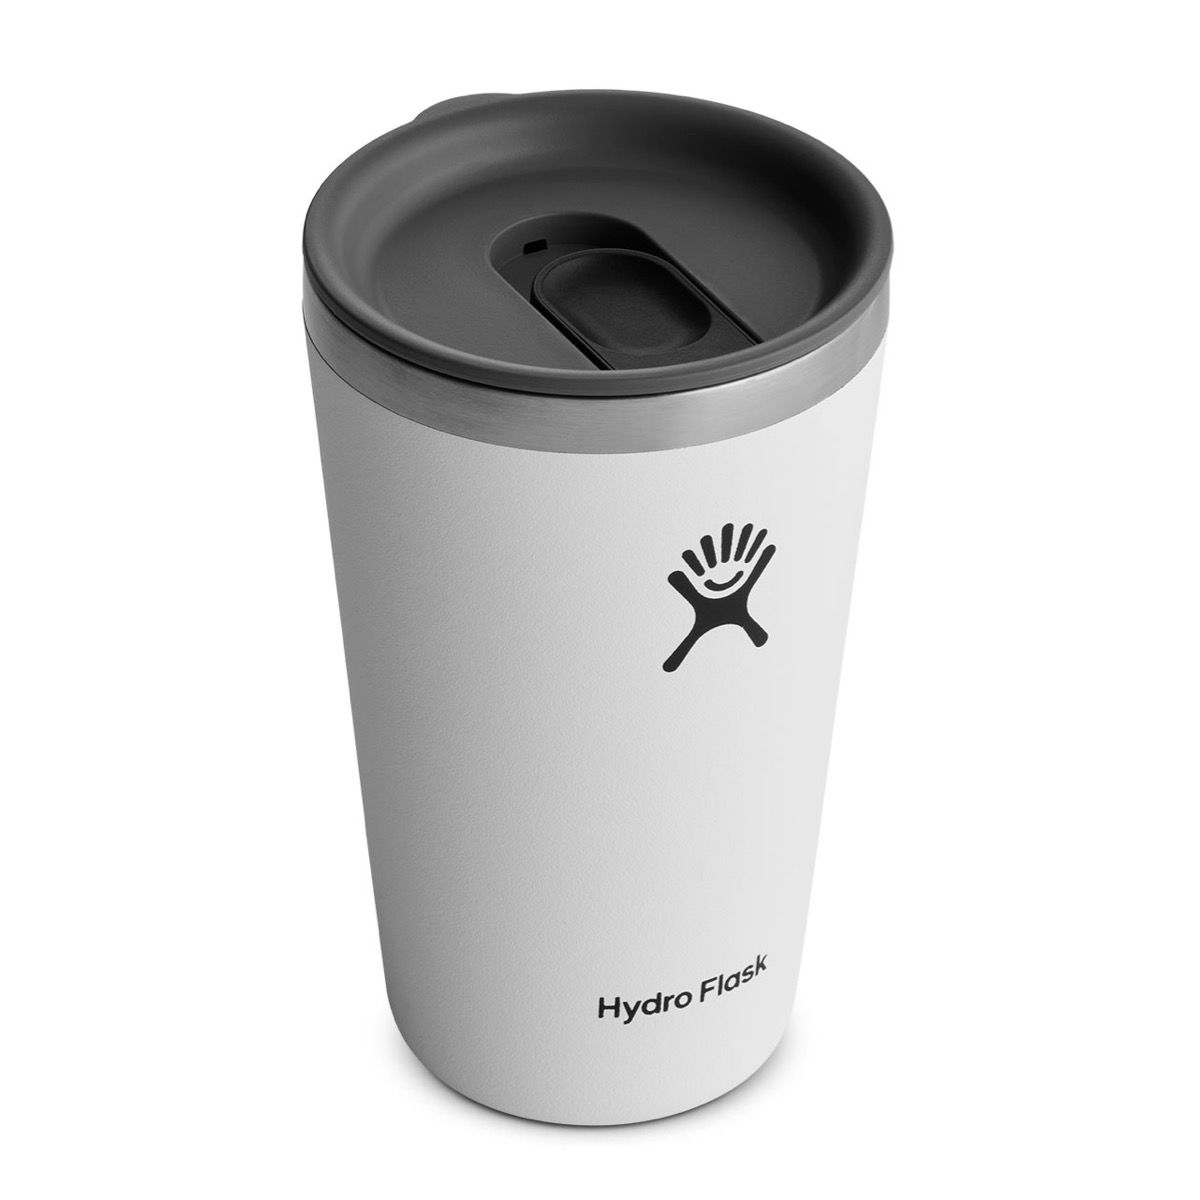 【【蘋果戶外】】Hydro Flask【隨行杯 / 473ml】16oz 保溫隨行杯 (經典白) 附蓋 咖啡杯 保溫杯 保冷杯 保溫瓶 TUMBLER